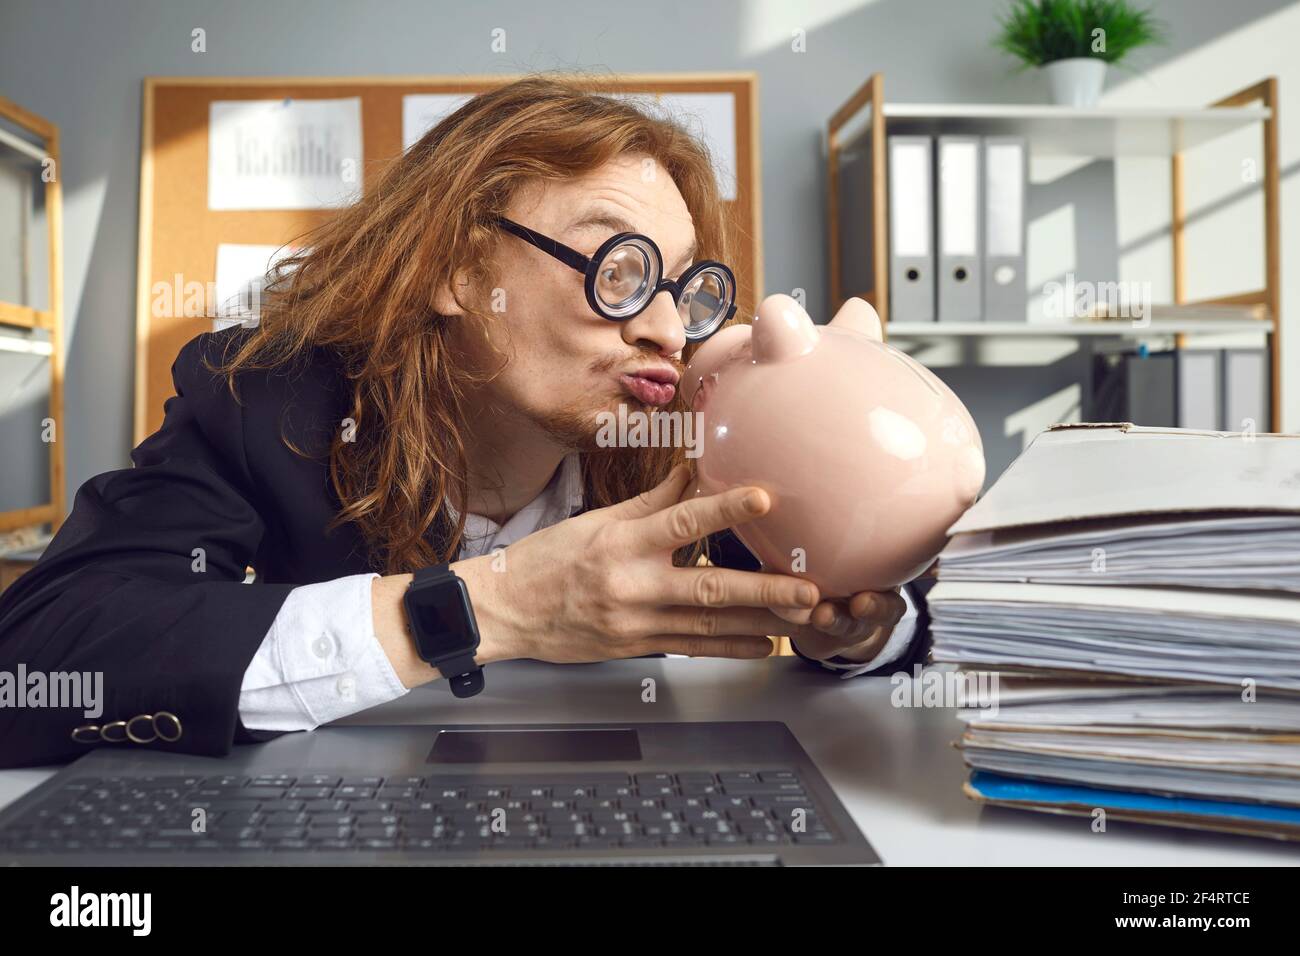 Komisch aussehender Mann in lustigen Gläsern, der am Schreibtisch sitzt Und küssen Sparschwein Stockfoto